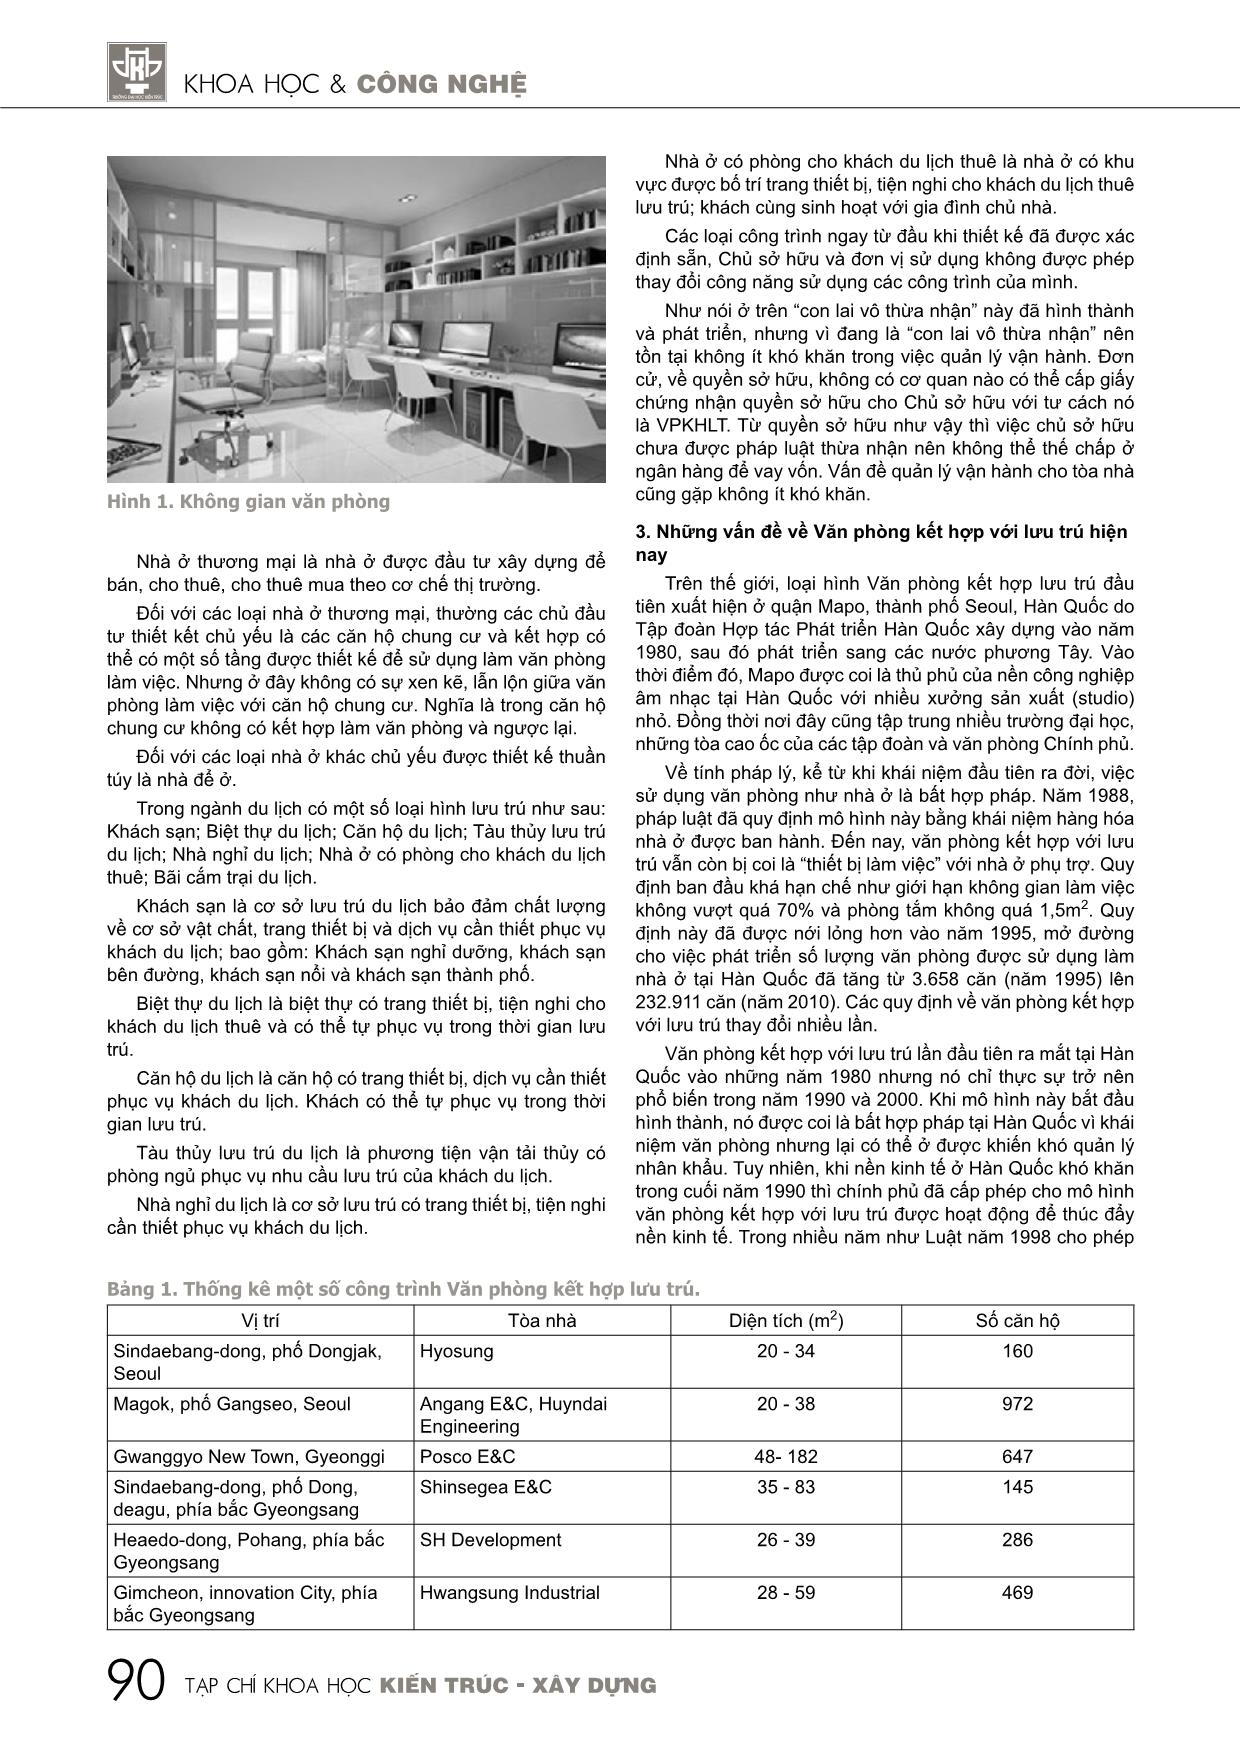 Nghiên cứu, đánh giá việc áp dụng loại hình bất động sản văn phòng kết hợp với lưu trú tại Việt Nam trang 3